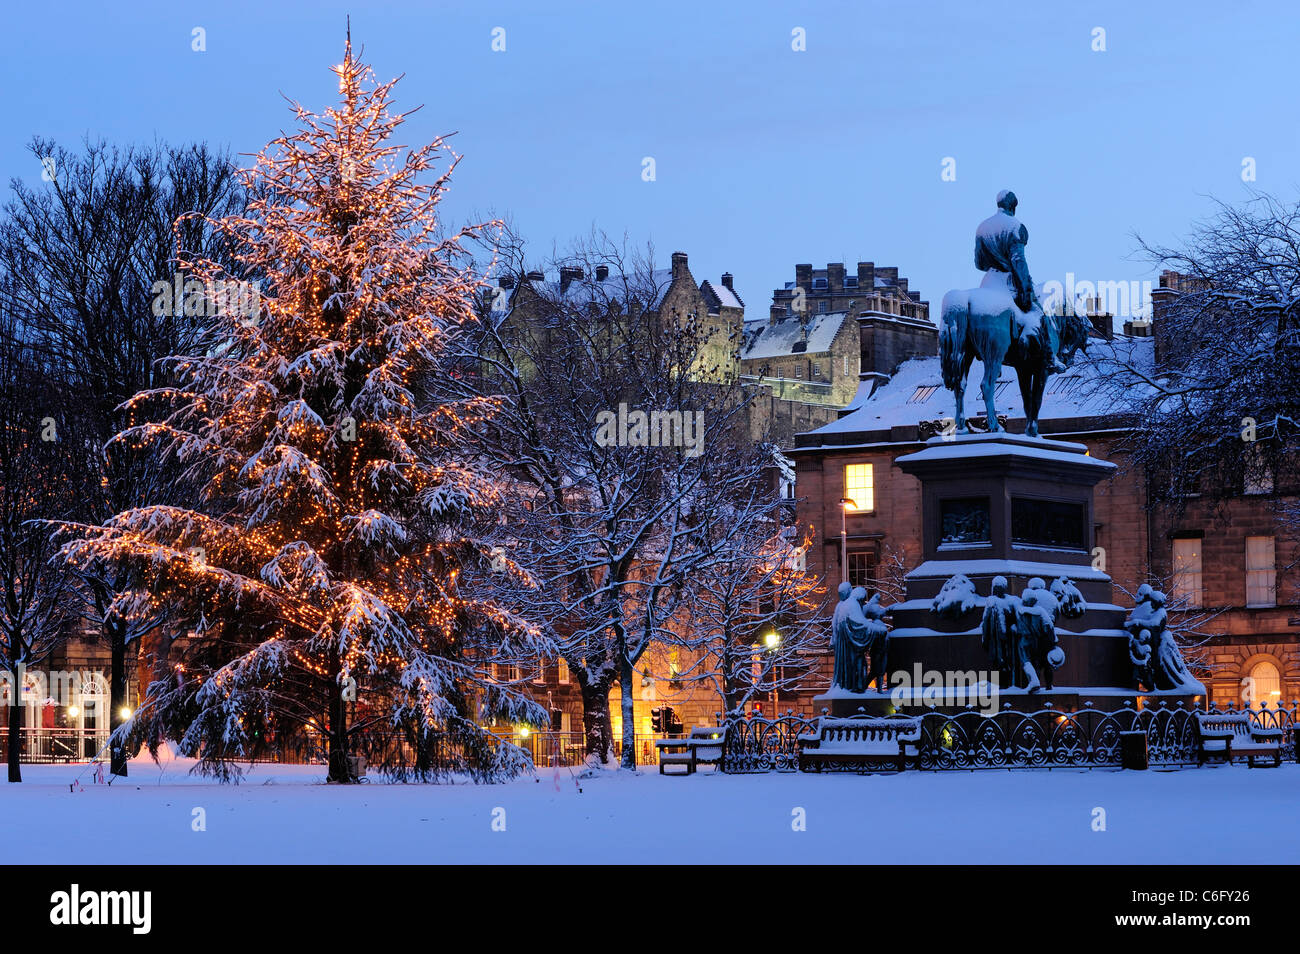 Árbol de Navidad y el Albert Memorial en Charlotte Square, en el fondo, con el castillo de Edimburgo, Escocia Foto de stock